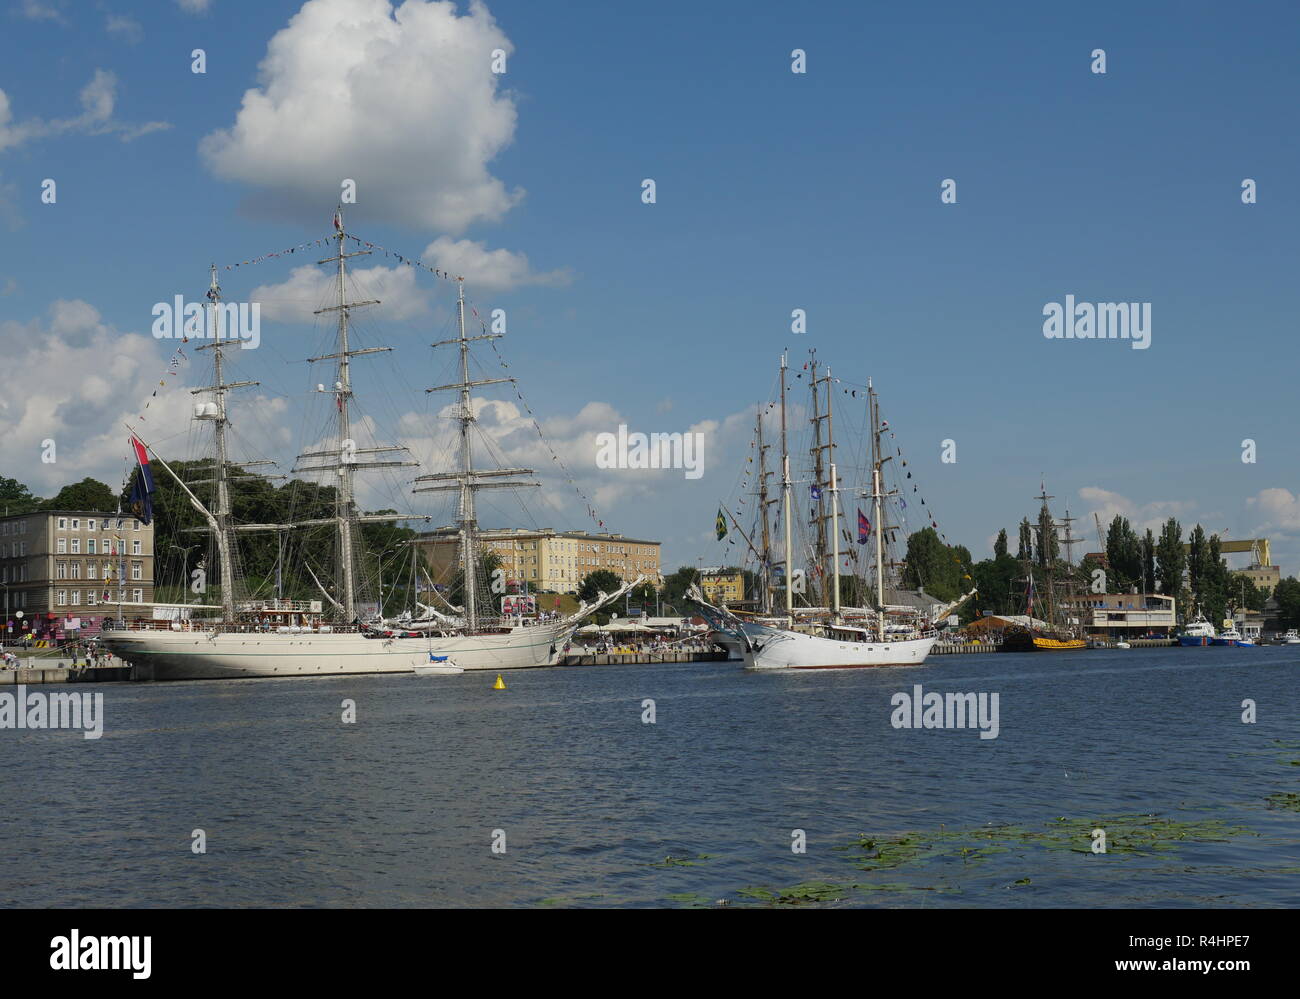 Le navi a vela vicino al terrapieno su uno sfondo con cielo Foto Stock